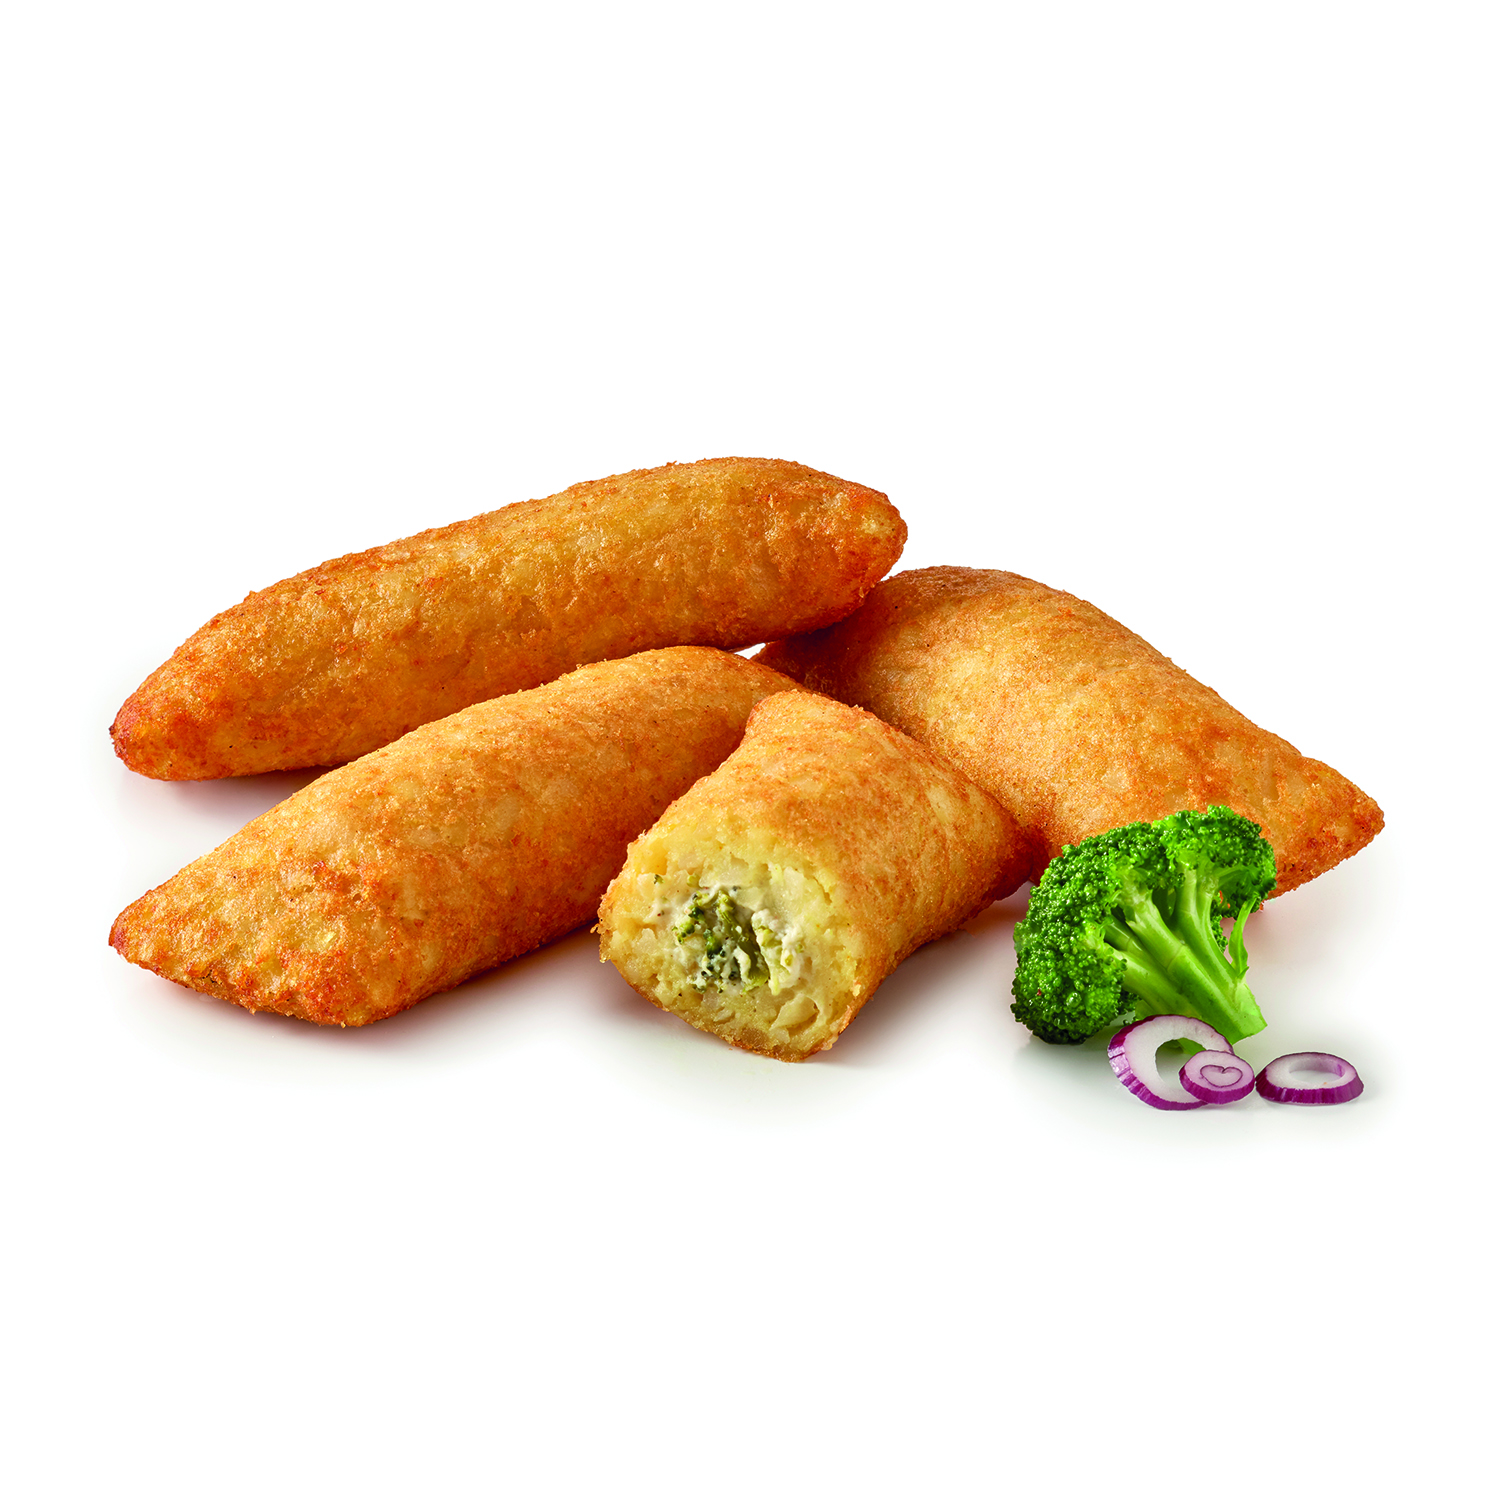 Kartoffel-Taschen Frischkäse/Broccoli 75g, 2500g